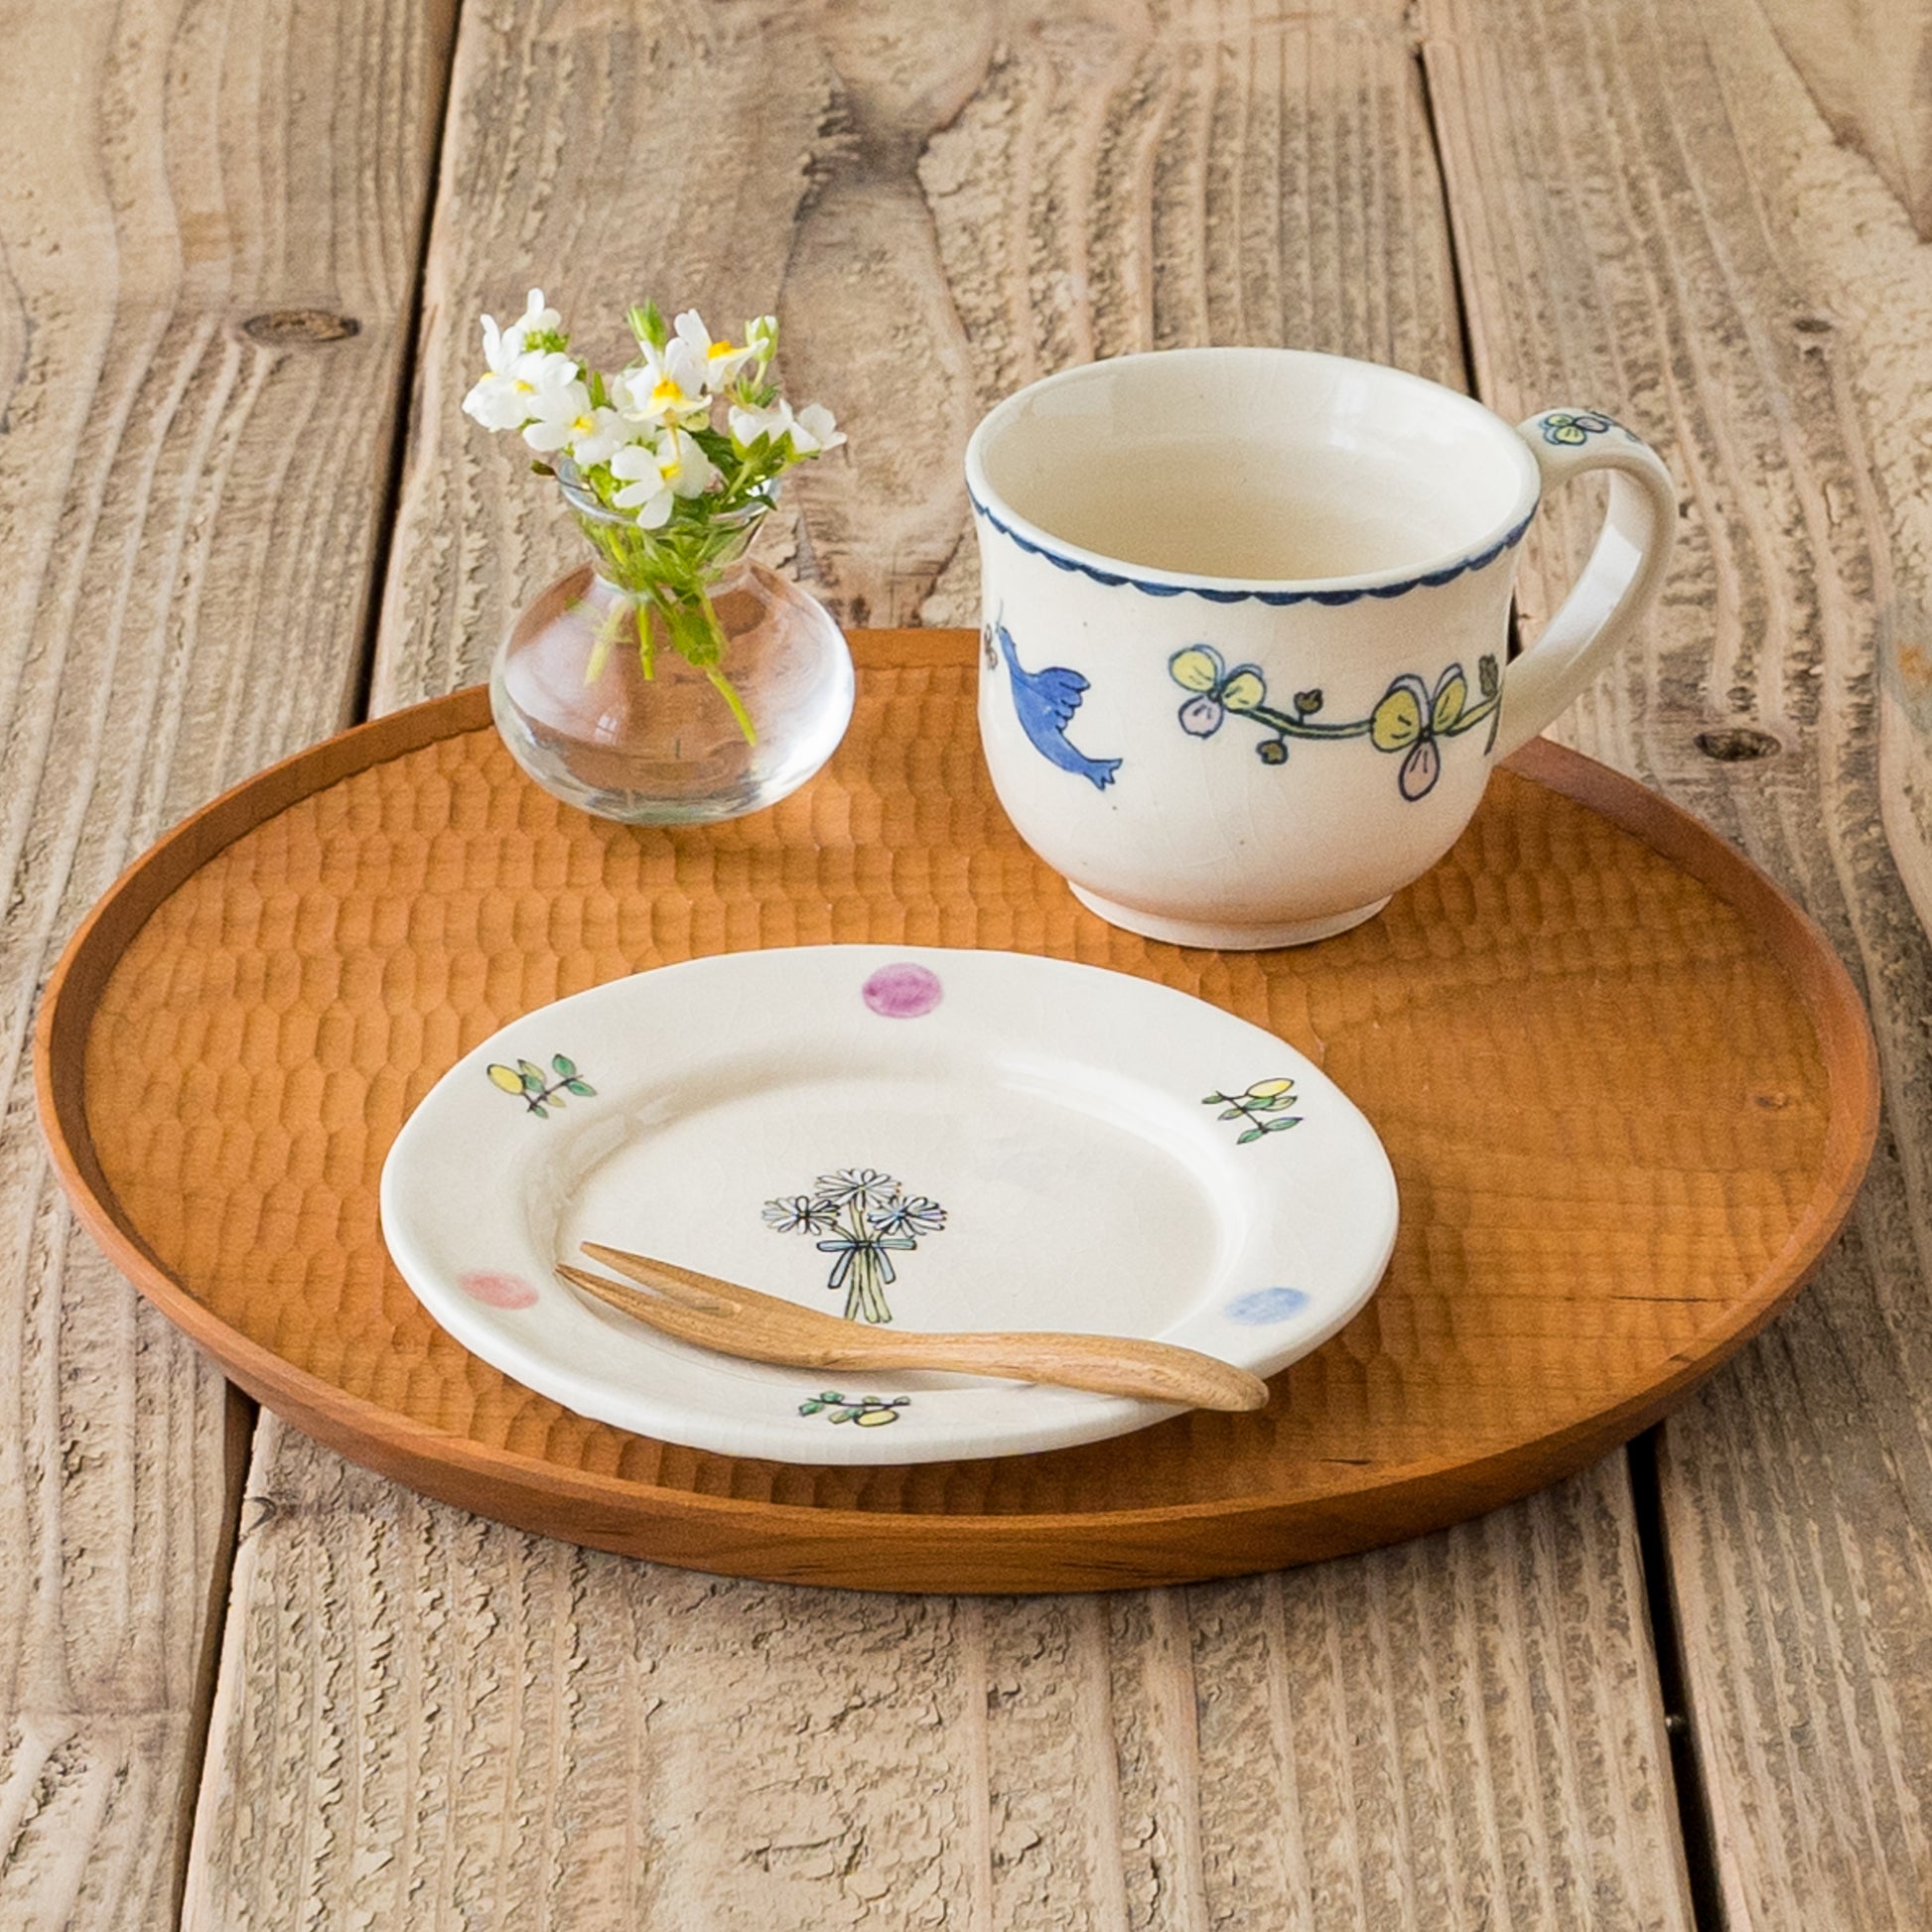 長浜由起子さんの色絵マグカップお花と青い鳥と花束4寸皿